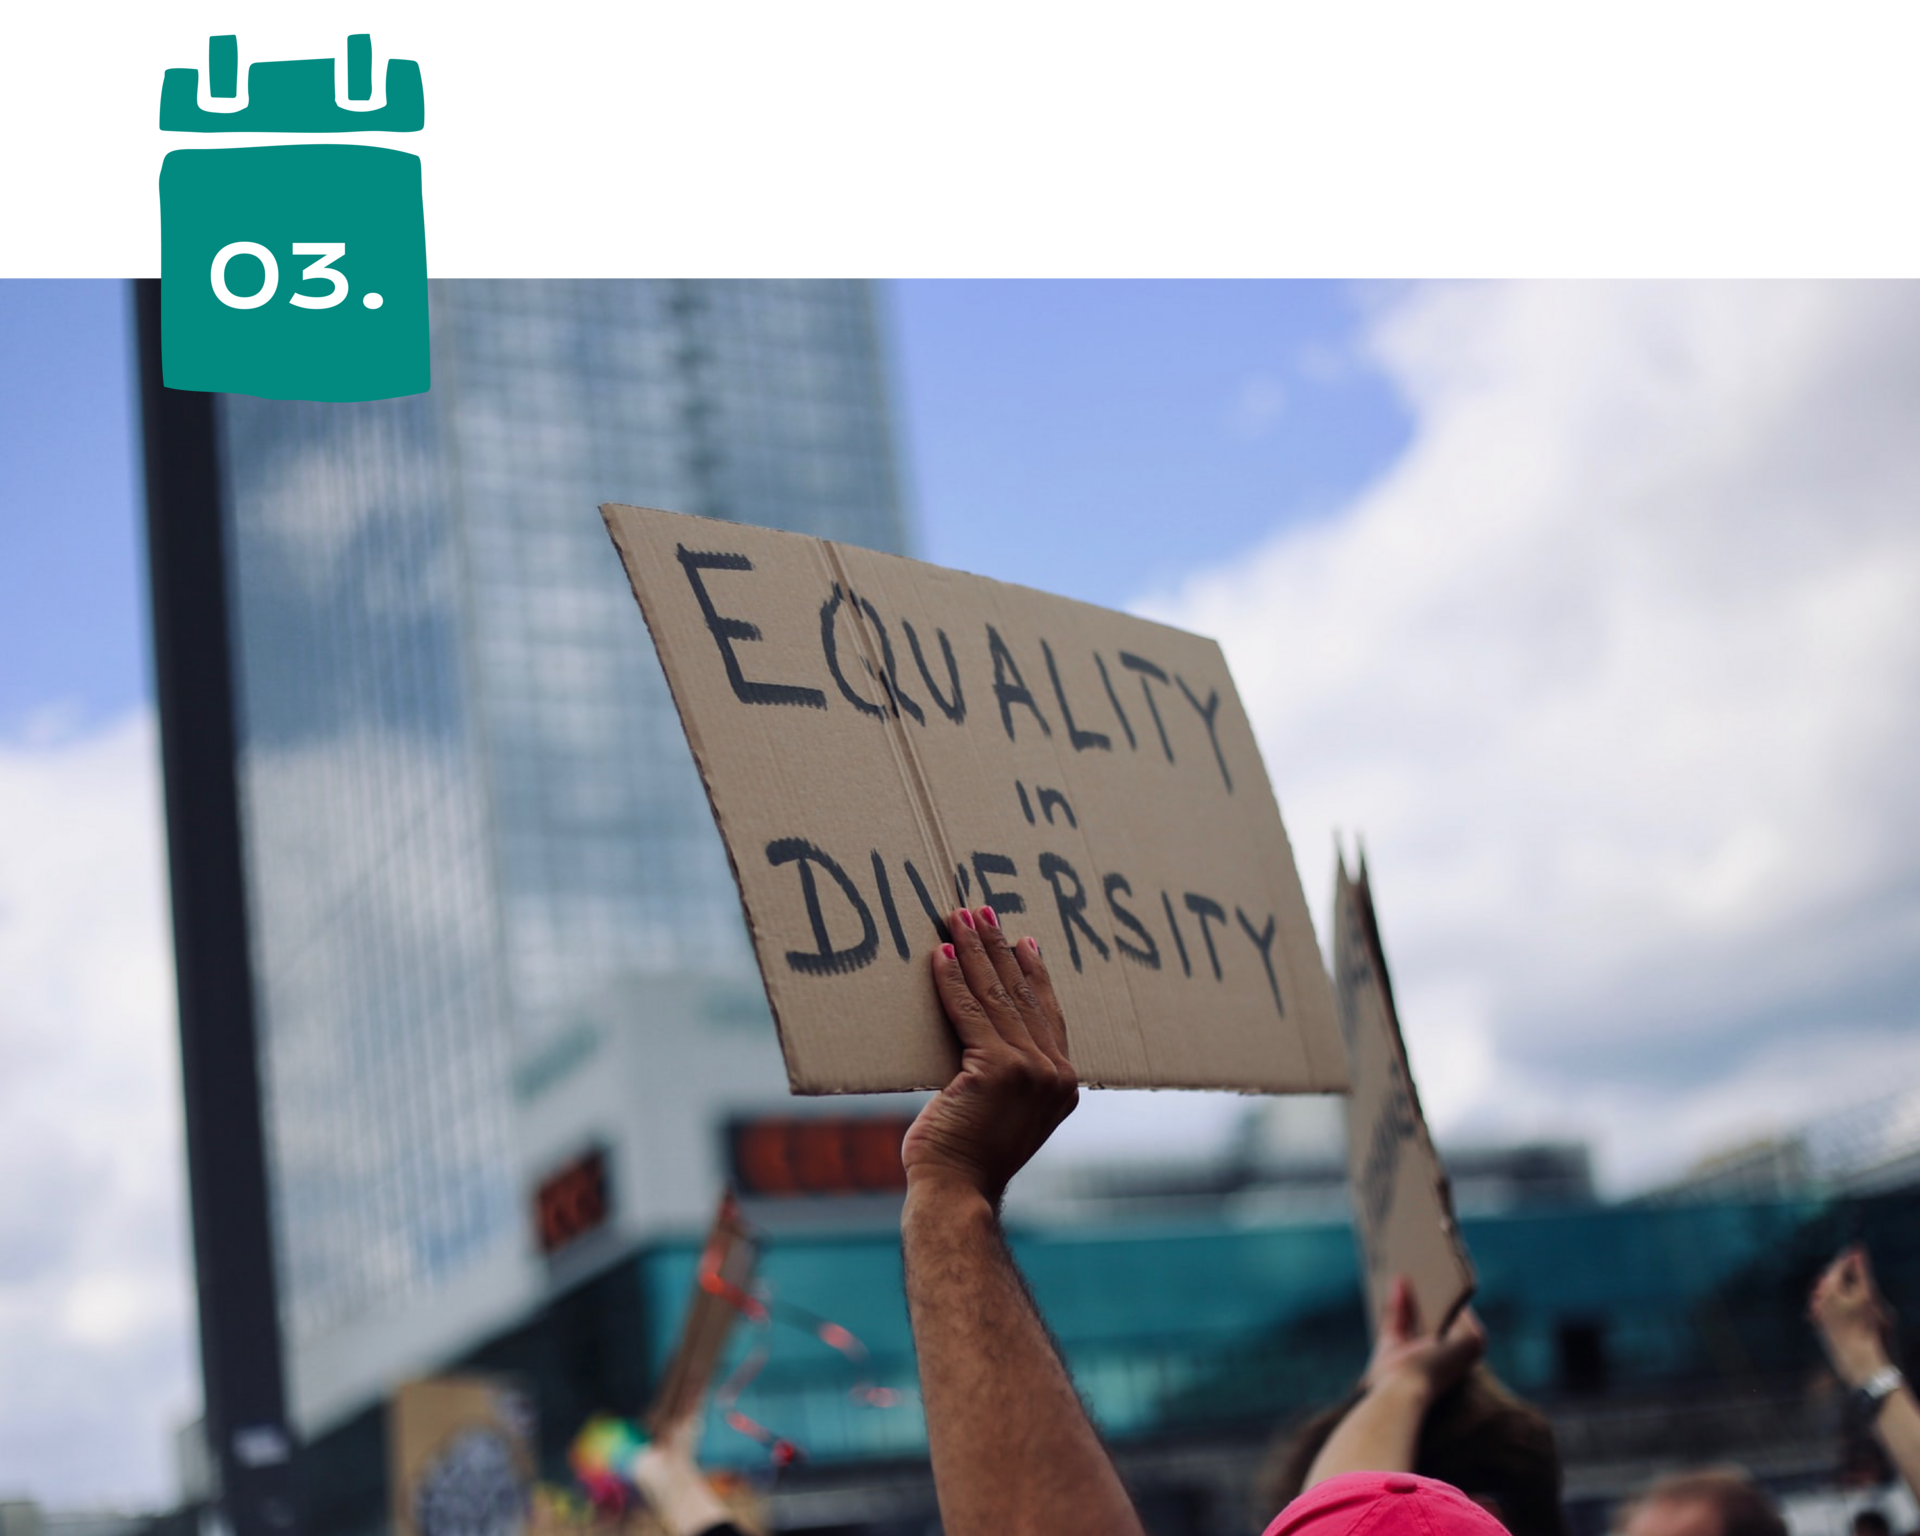 Schild mit Aufschrift "Equality in Diversity"